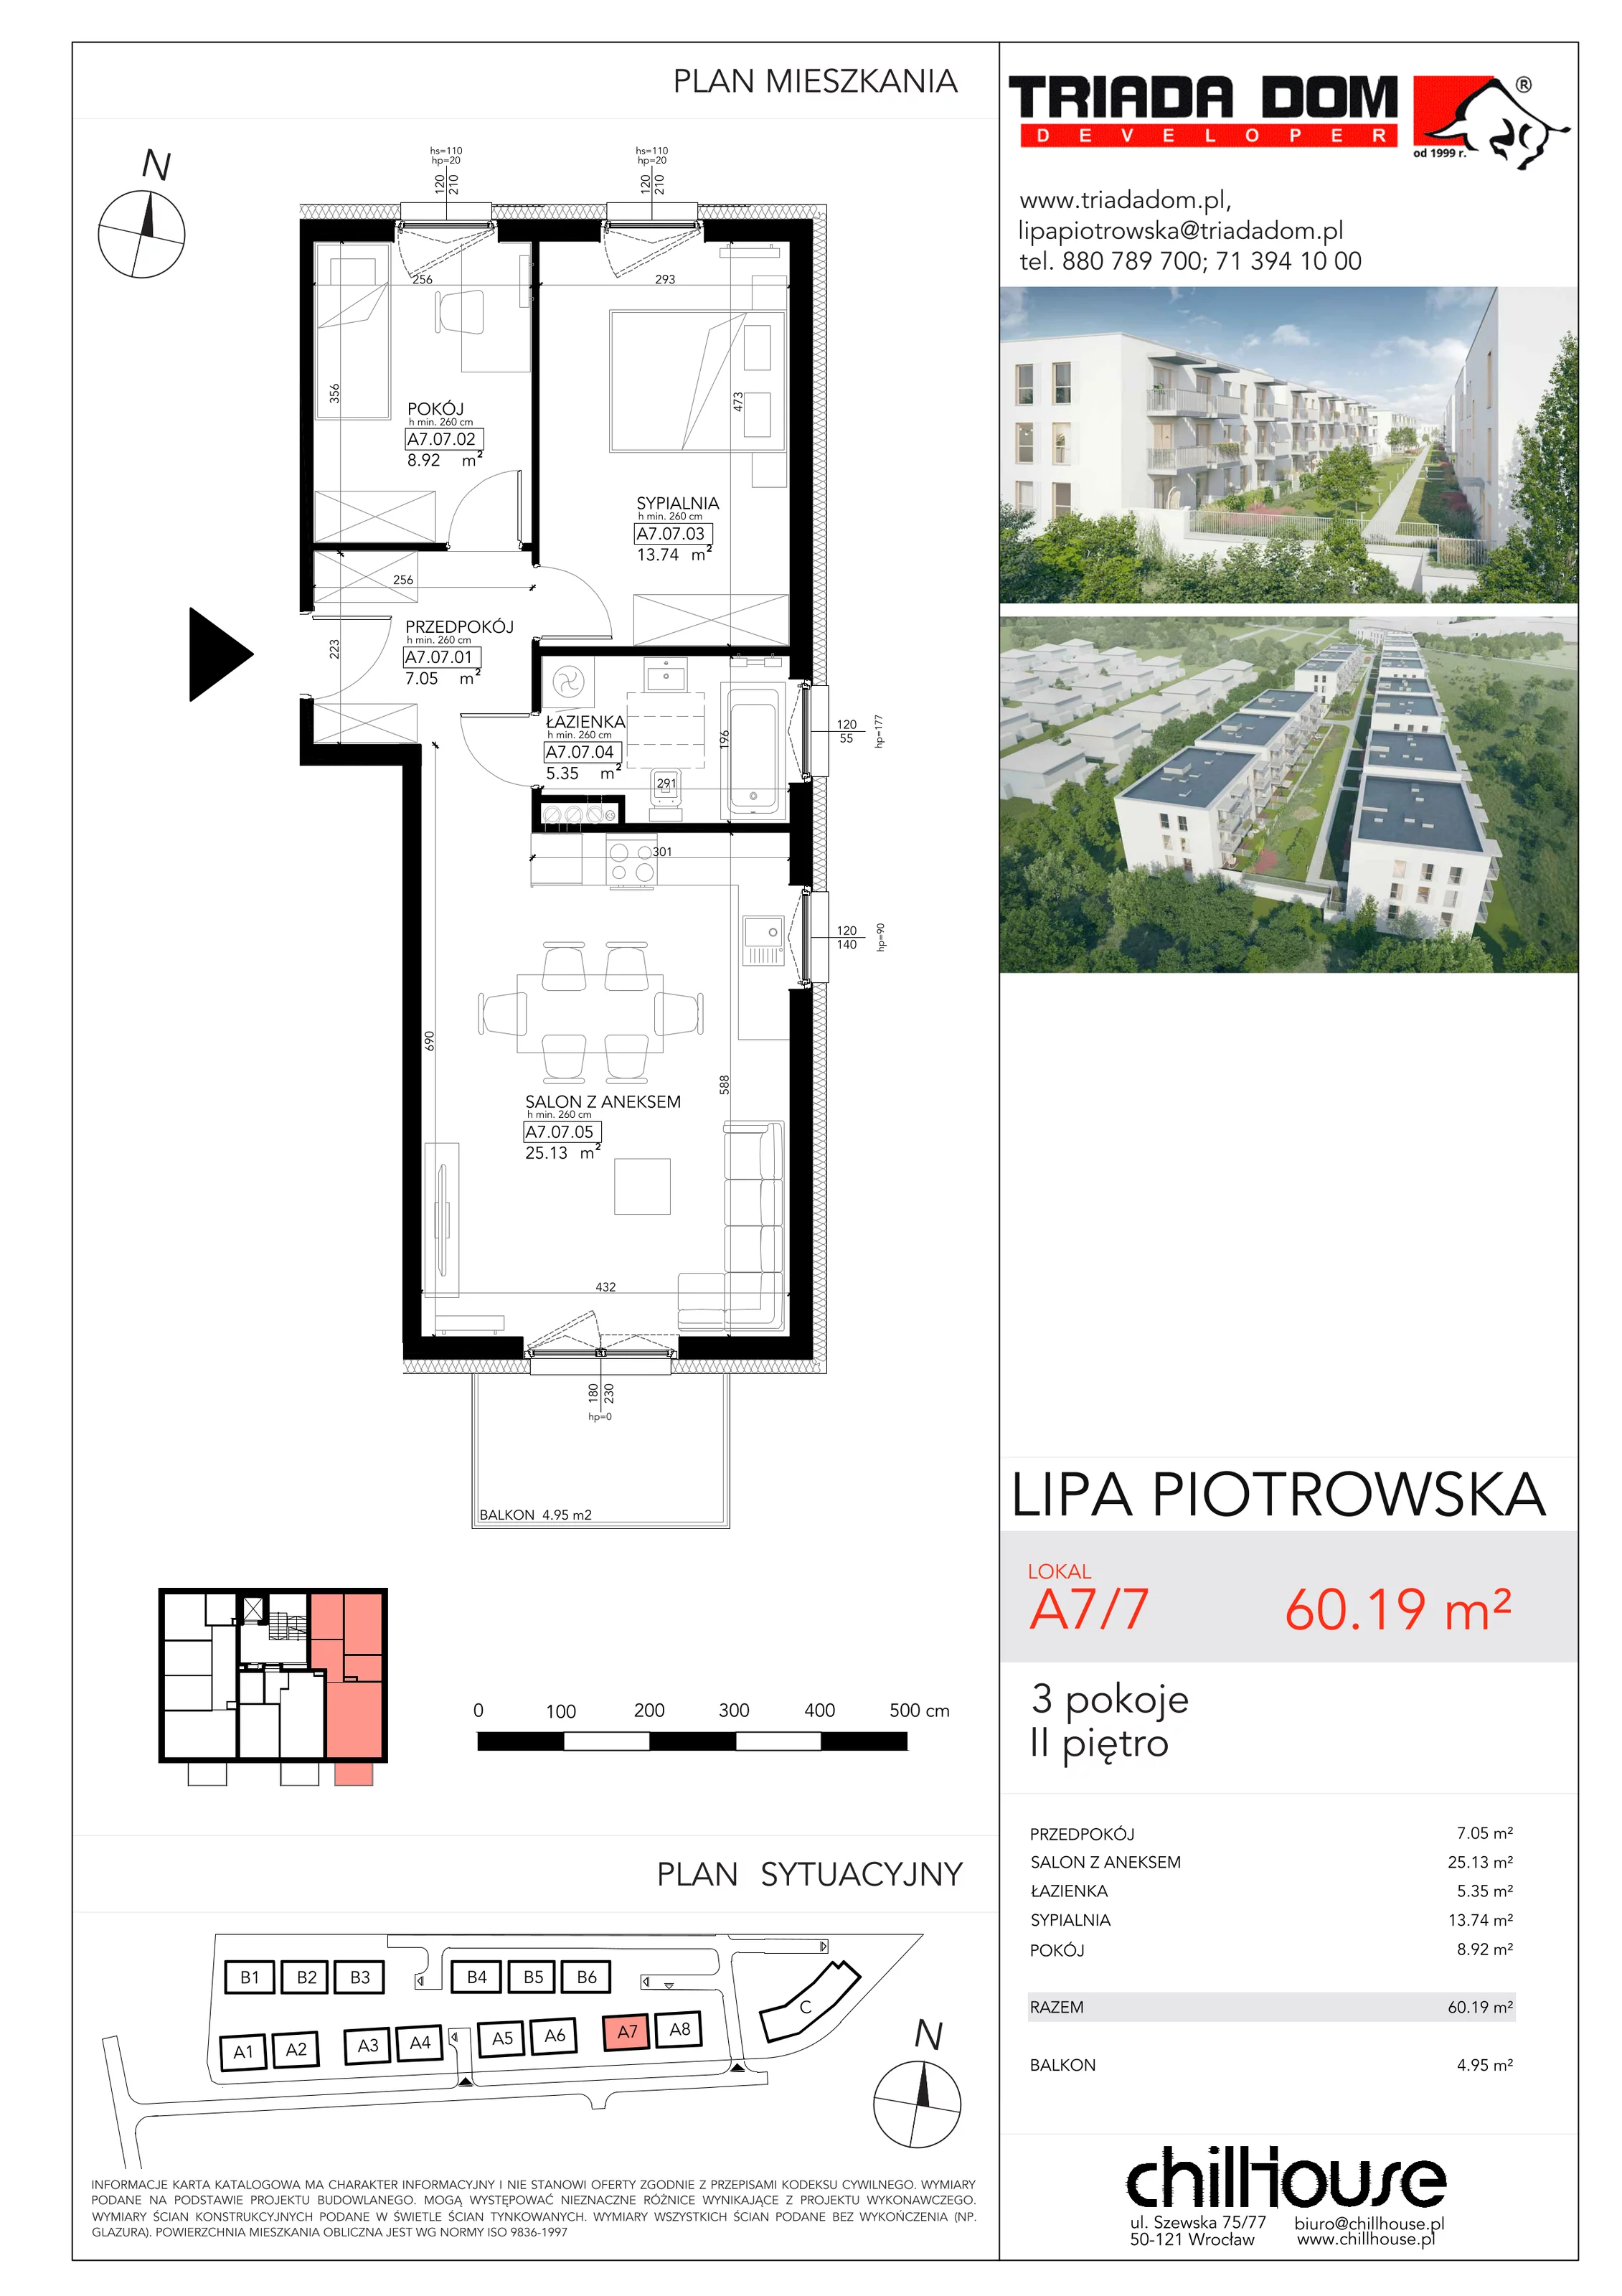 Mieszkanie 60,19 m², piętro 2, oferta nr A77, Lipa Piotrowska, Wrocław, Lipa Piotrowska, ul. Lawendowa / Melisowa